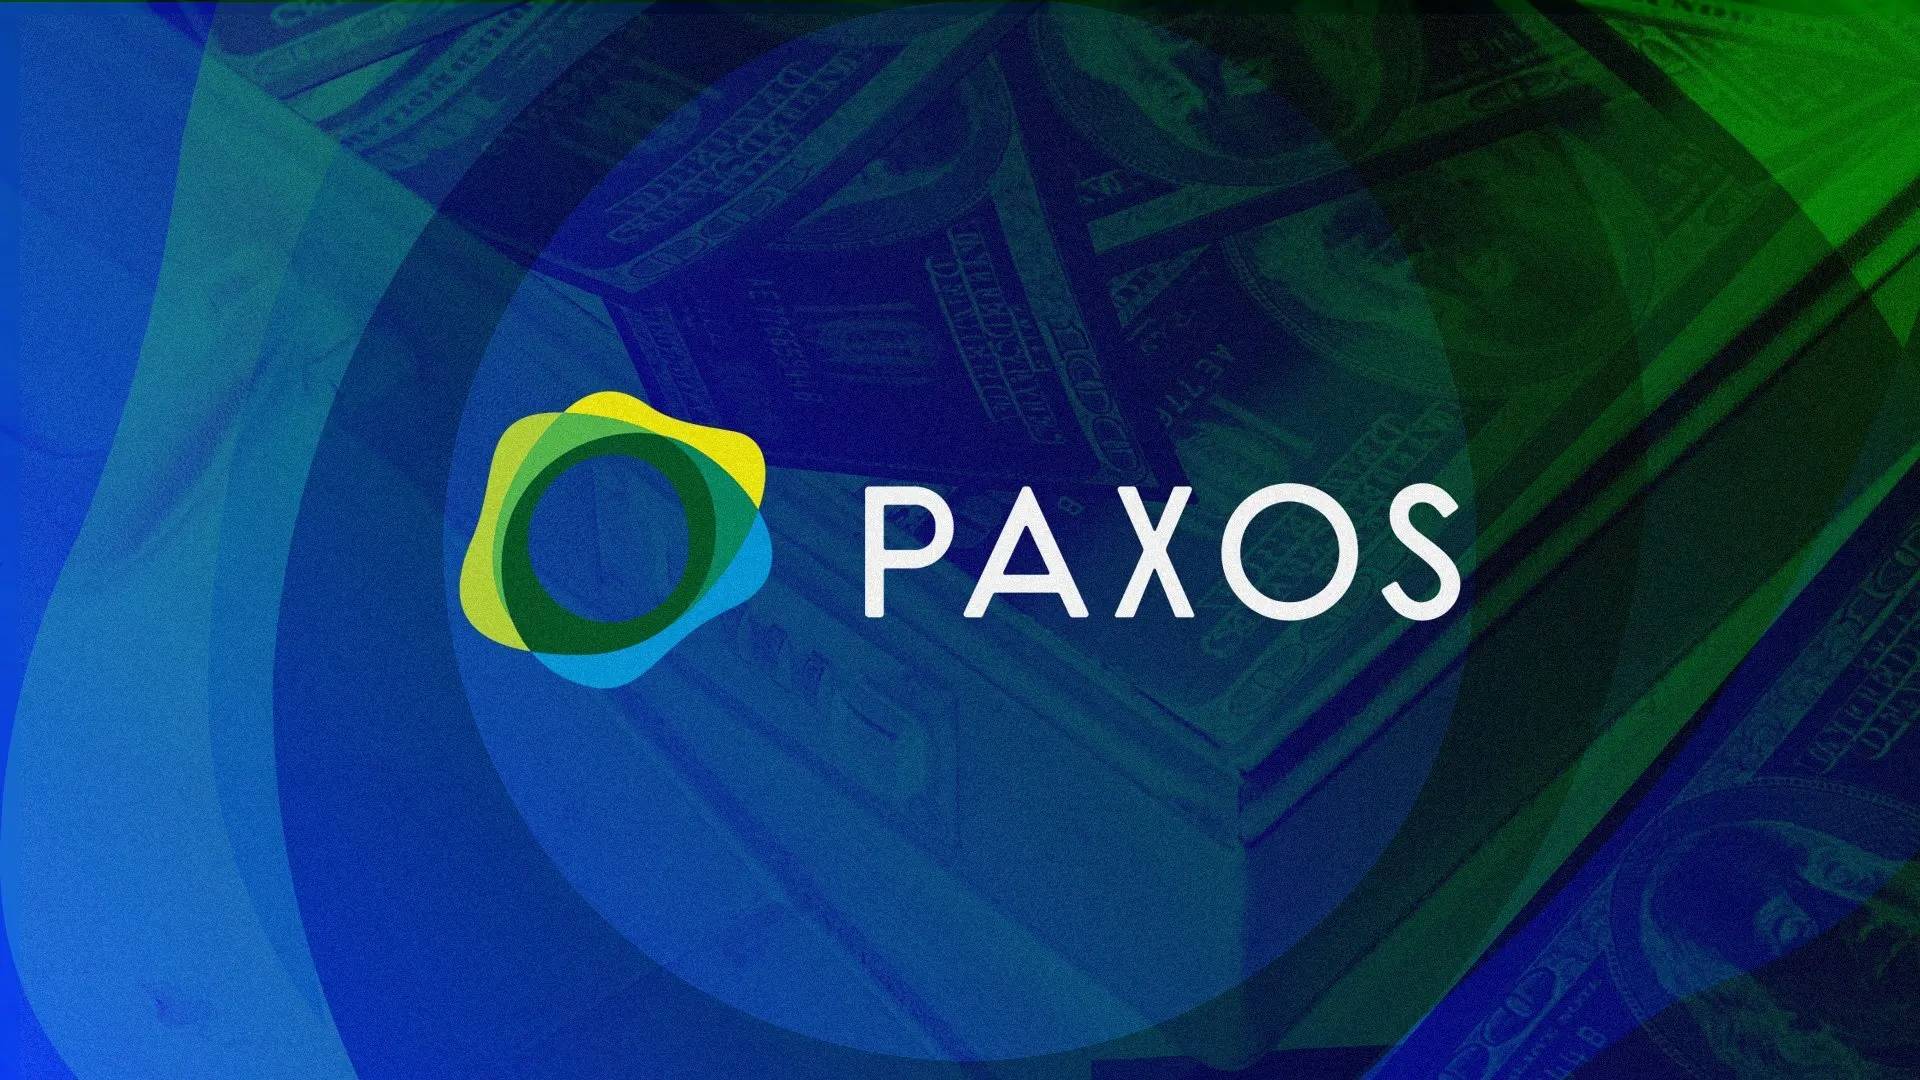 Paxos Cắt Giảm 20 Nhân Sự Dù Tiềm Lực Vẫn Vững Vàng